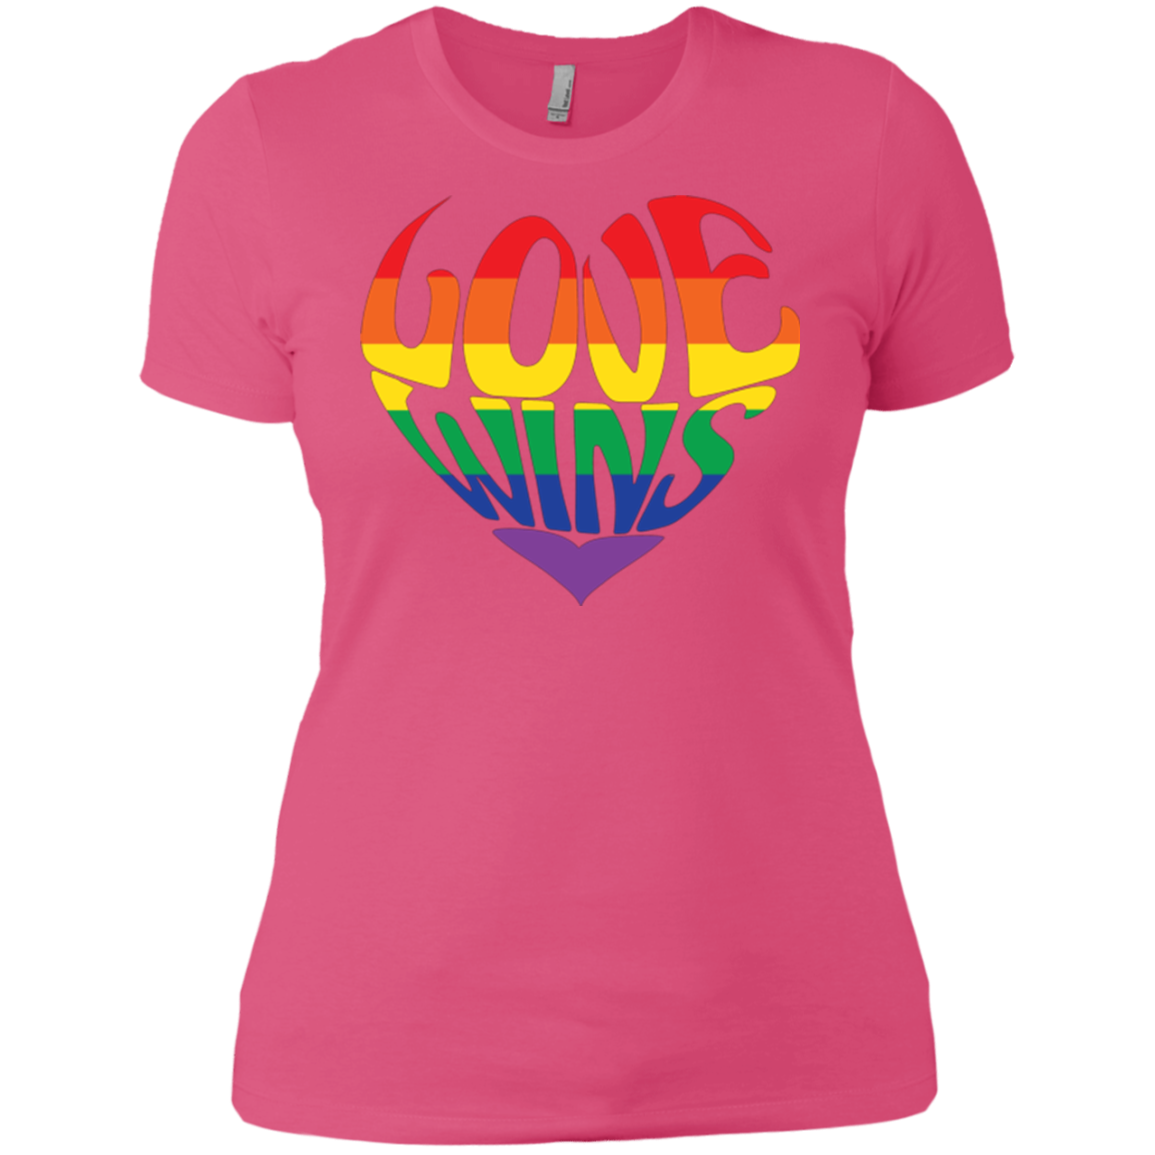 Love Wins Pink Half Sleeves LGBTQ Pride Tshirt for women